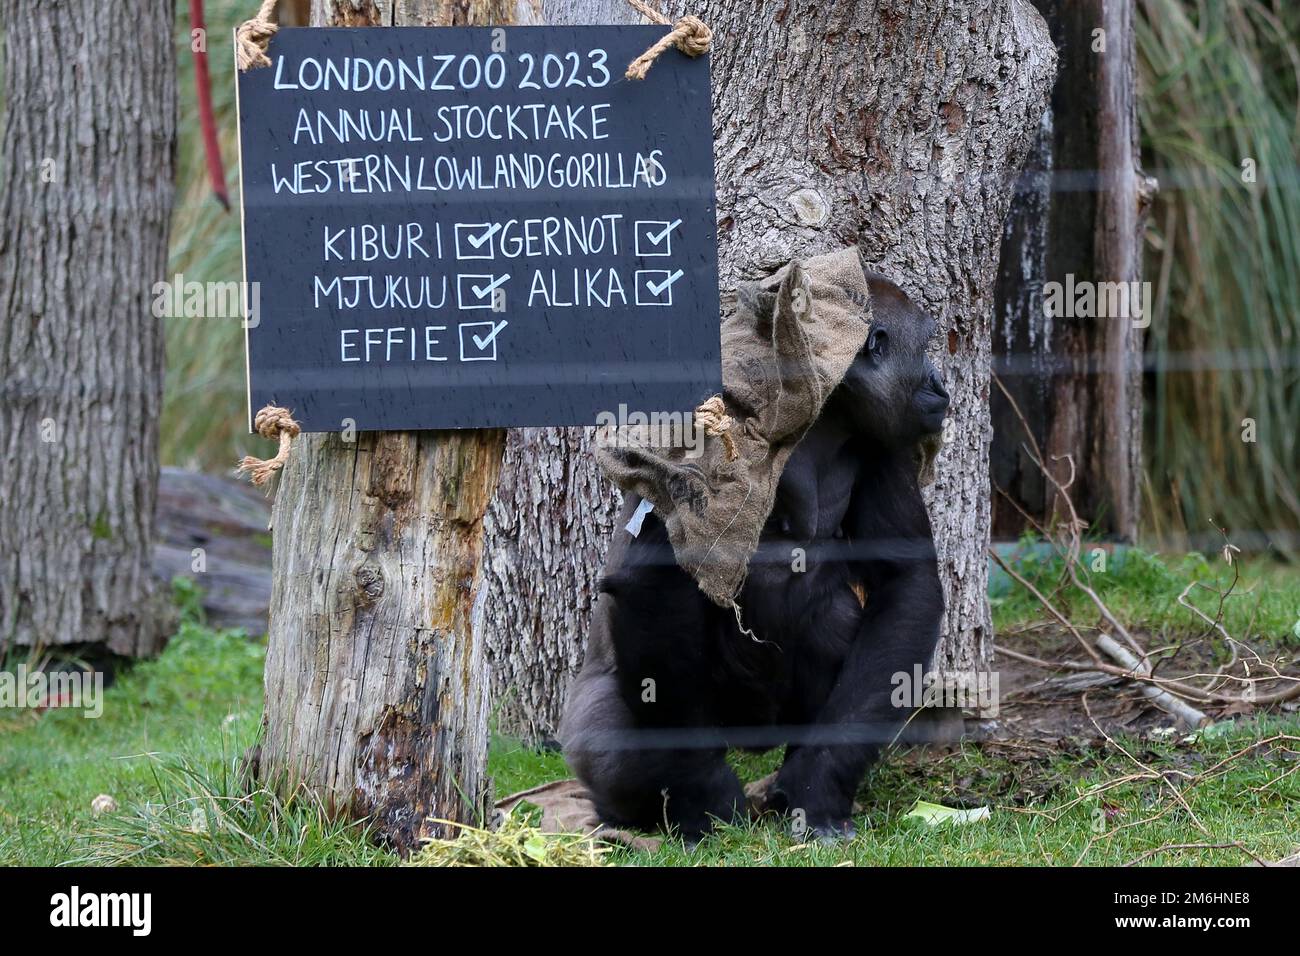 Un gorilla Western di pianura visto durante la stocktake annuale allo ZSL London Zoo. L'evento annuale di stocktake si svolge all'inizio di ogni anno e richiede quasi una settimana per completare le informazioni che vengono condivise con i giardini zoologici di tutto il mondo. Foto Stock